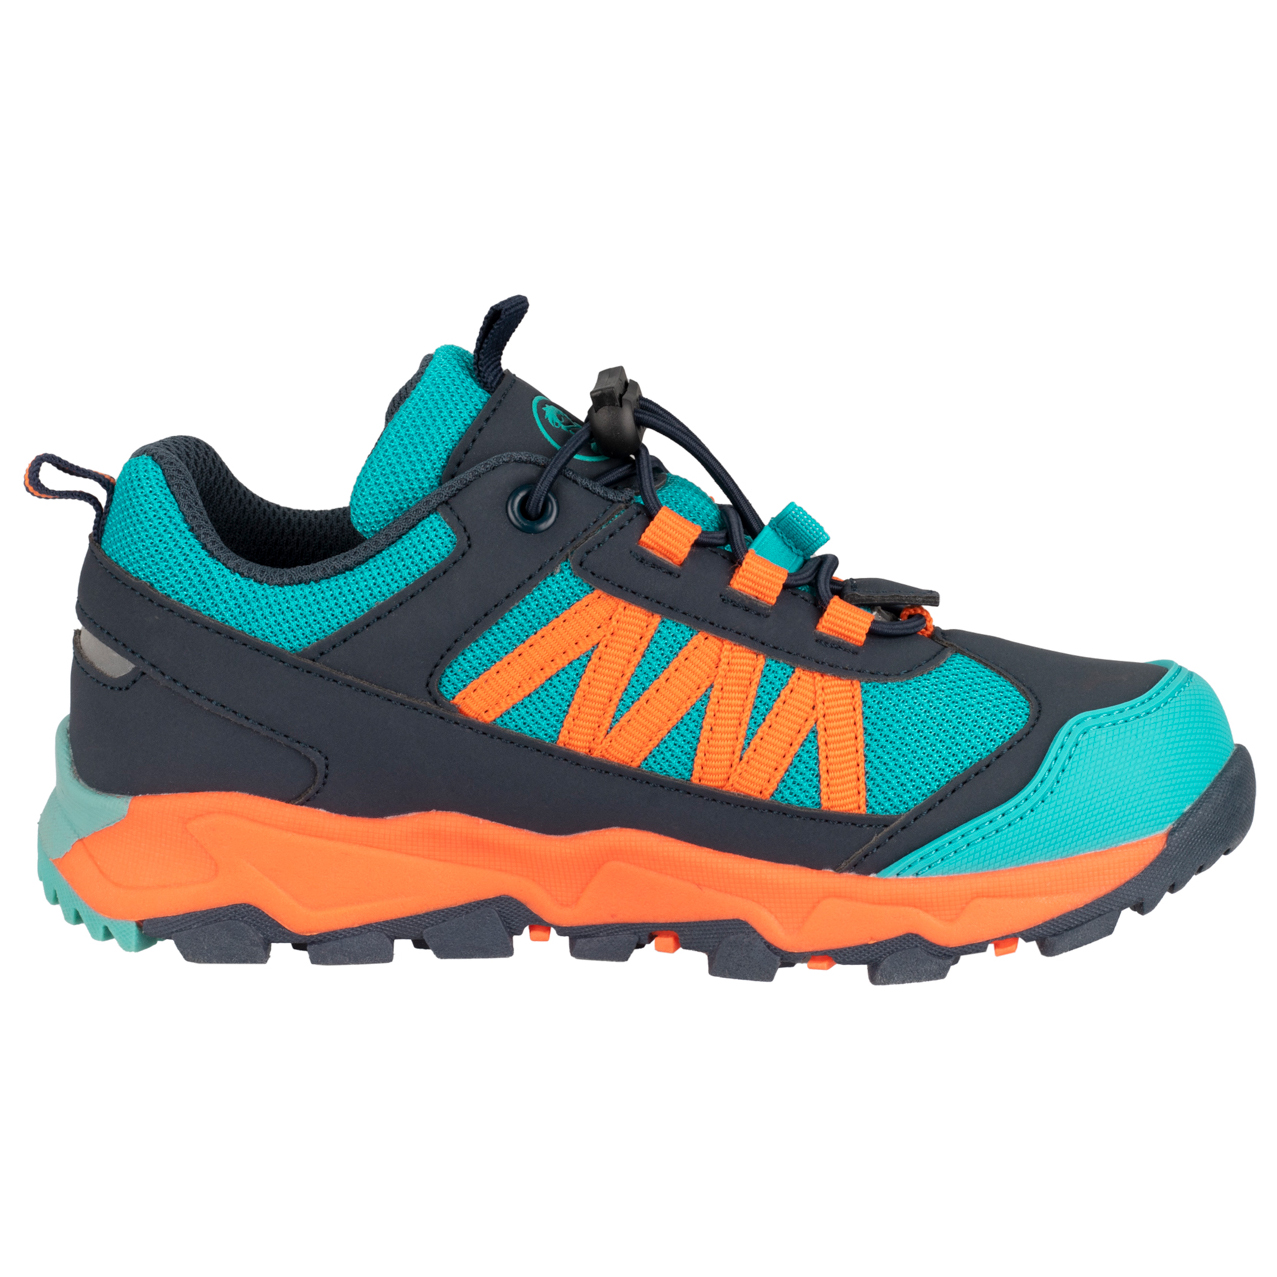 Мультиспортивная обувь Trollkids Kid's Tronfjell Hiker Low, цвет Atlantic Blue/Dark Navy/Glow Orange